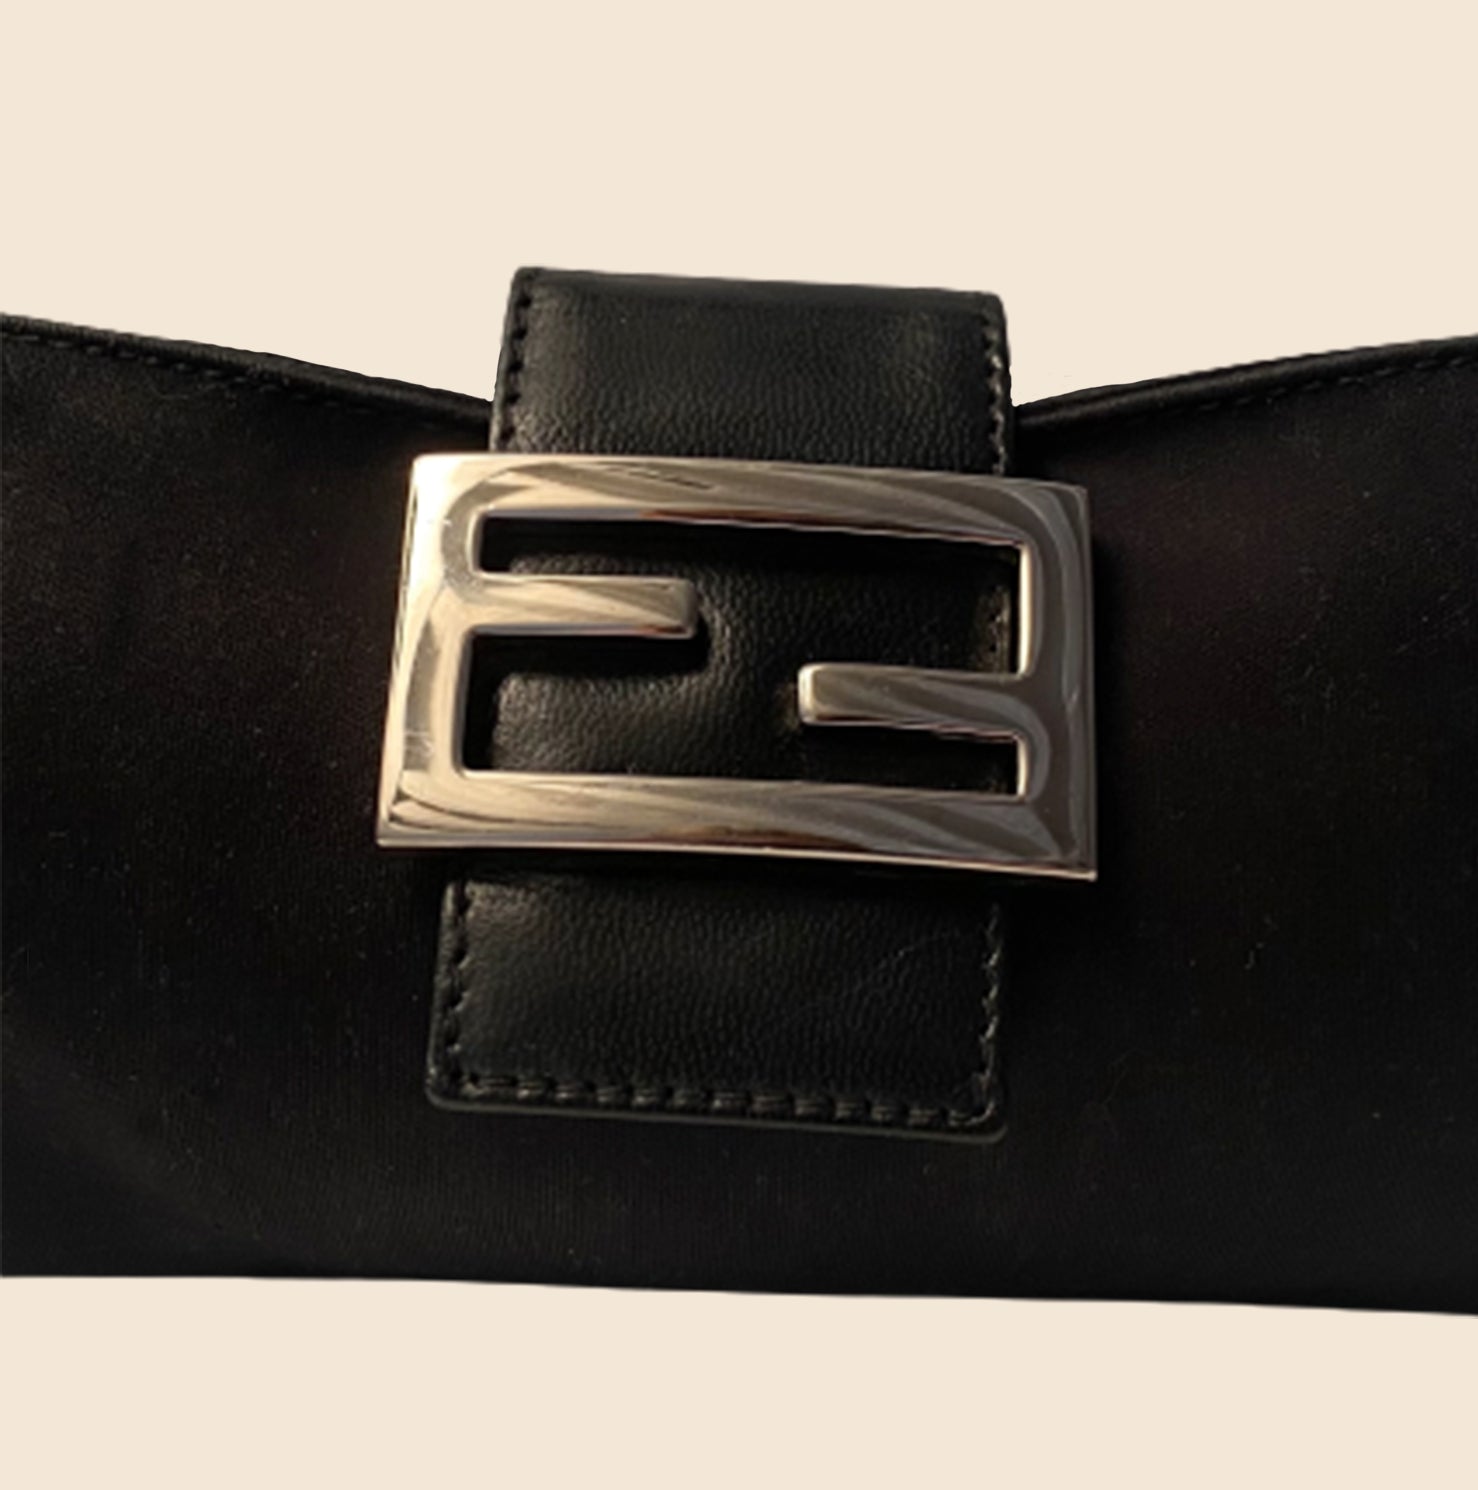 FENDI: leather clutch bag with FF logo - Black